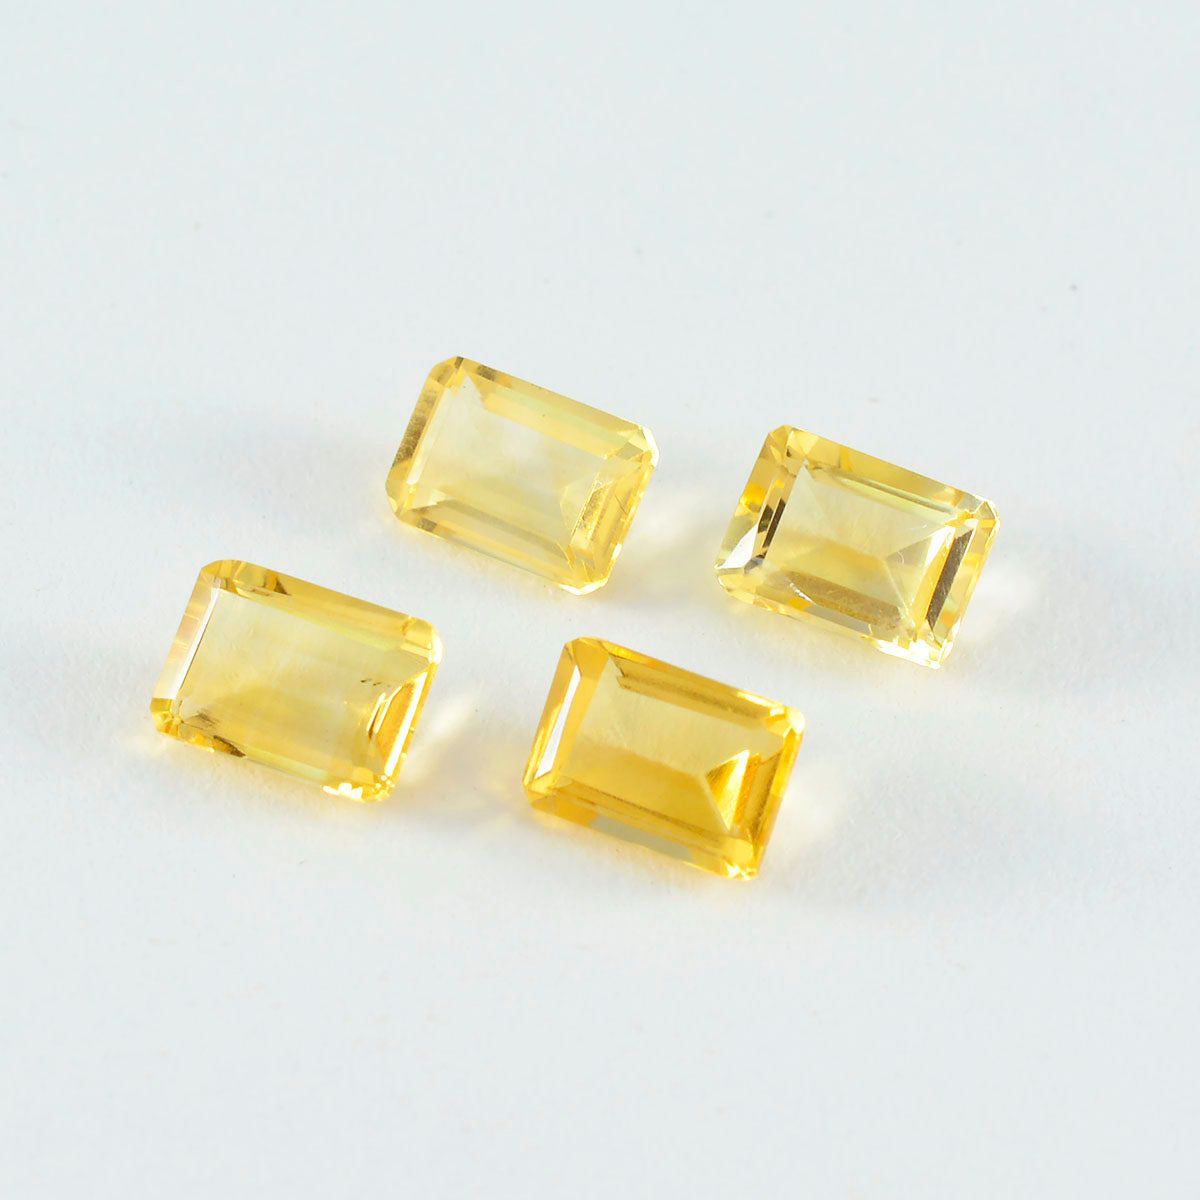 riyogems 1 шт. натуральный желтый цитрин ограненный восьмиугольной формы 7x9 мм, довольно качественный свободный драгоценный камень